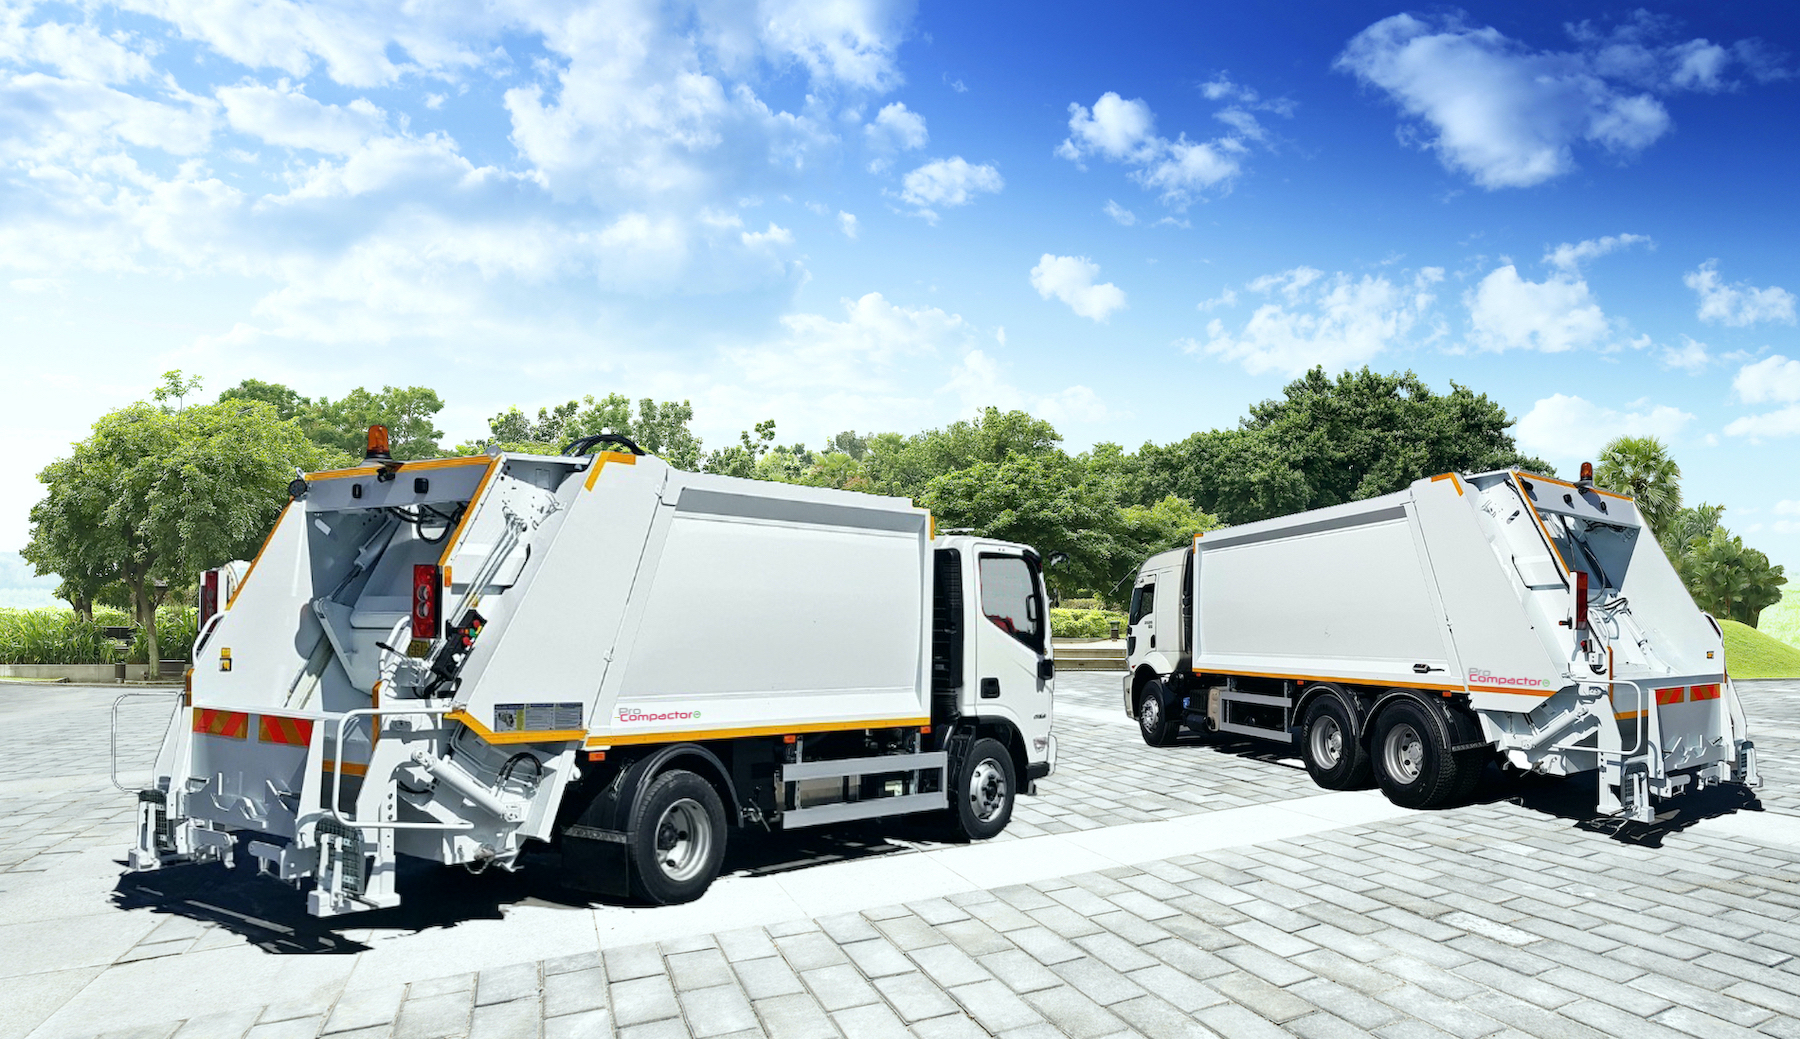 La función principal de un camión de basura es hacer la recolección de todo tipo de desechos: basura, desechos sólidos y objetos de reciclaje y transportarlos a instalaciones más grandes para el tratamiento de desechos. Los camiones de basura son utilizados principalmente por empresas municipales y privadas.